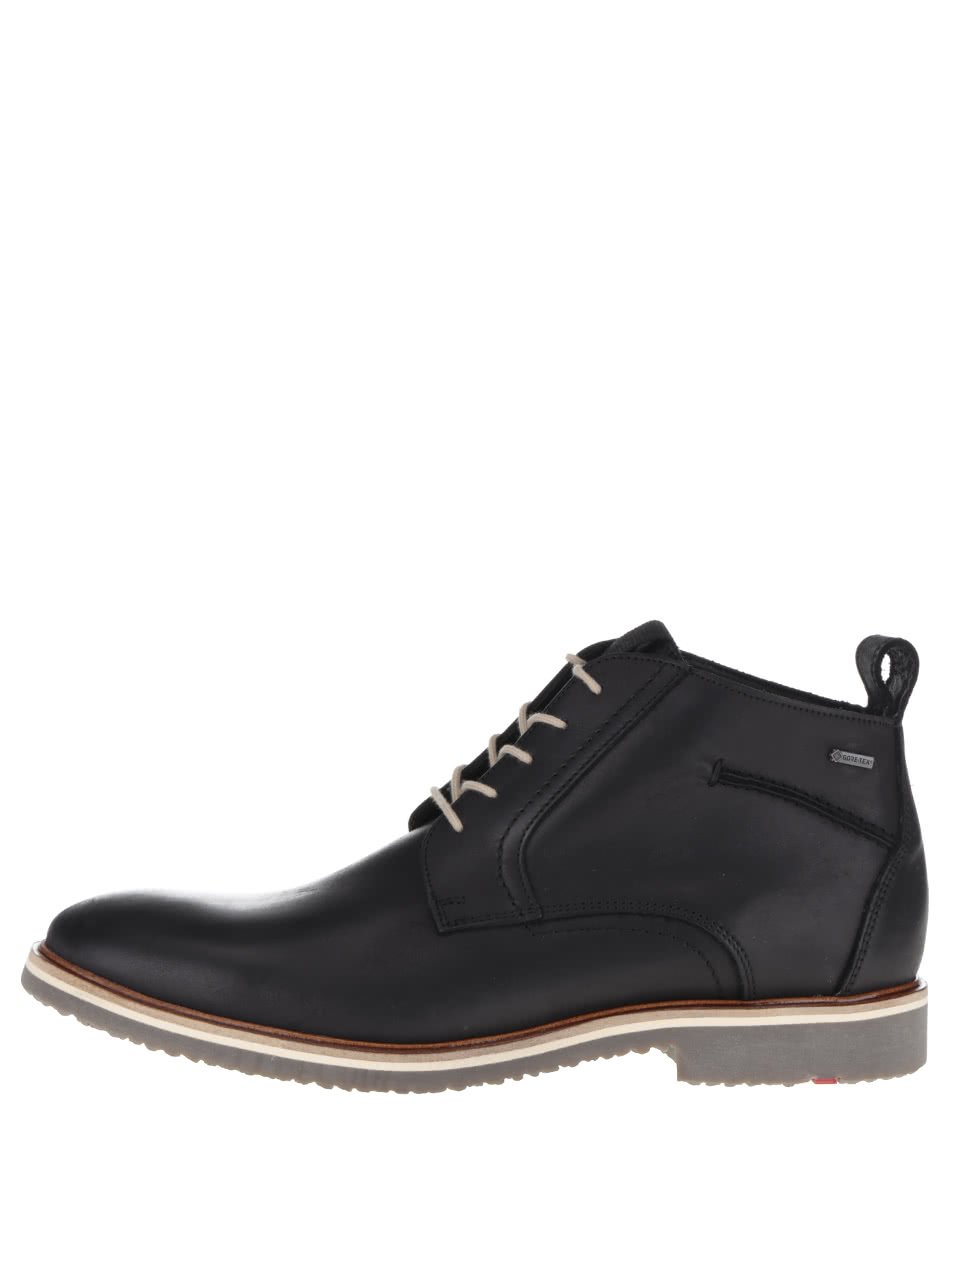 Černé pánské kožené kotníkové boty Lloyd Panama